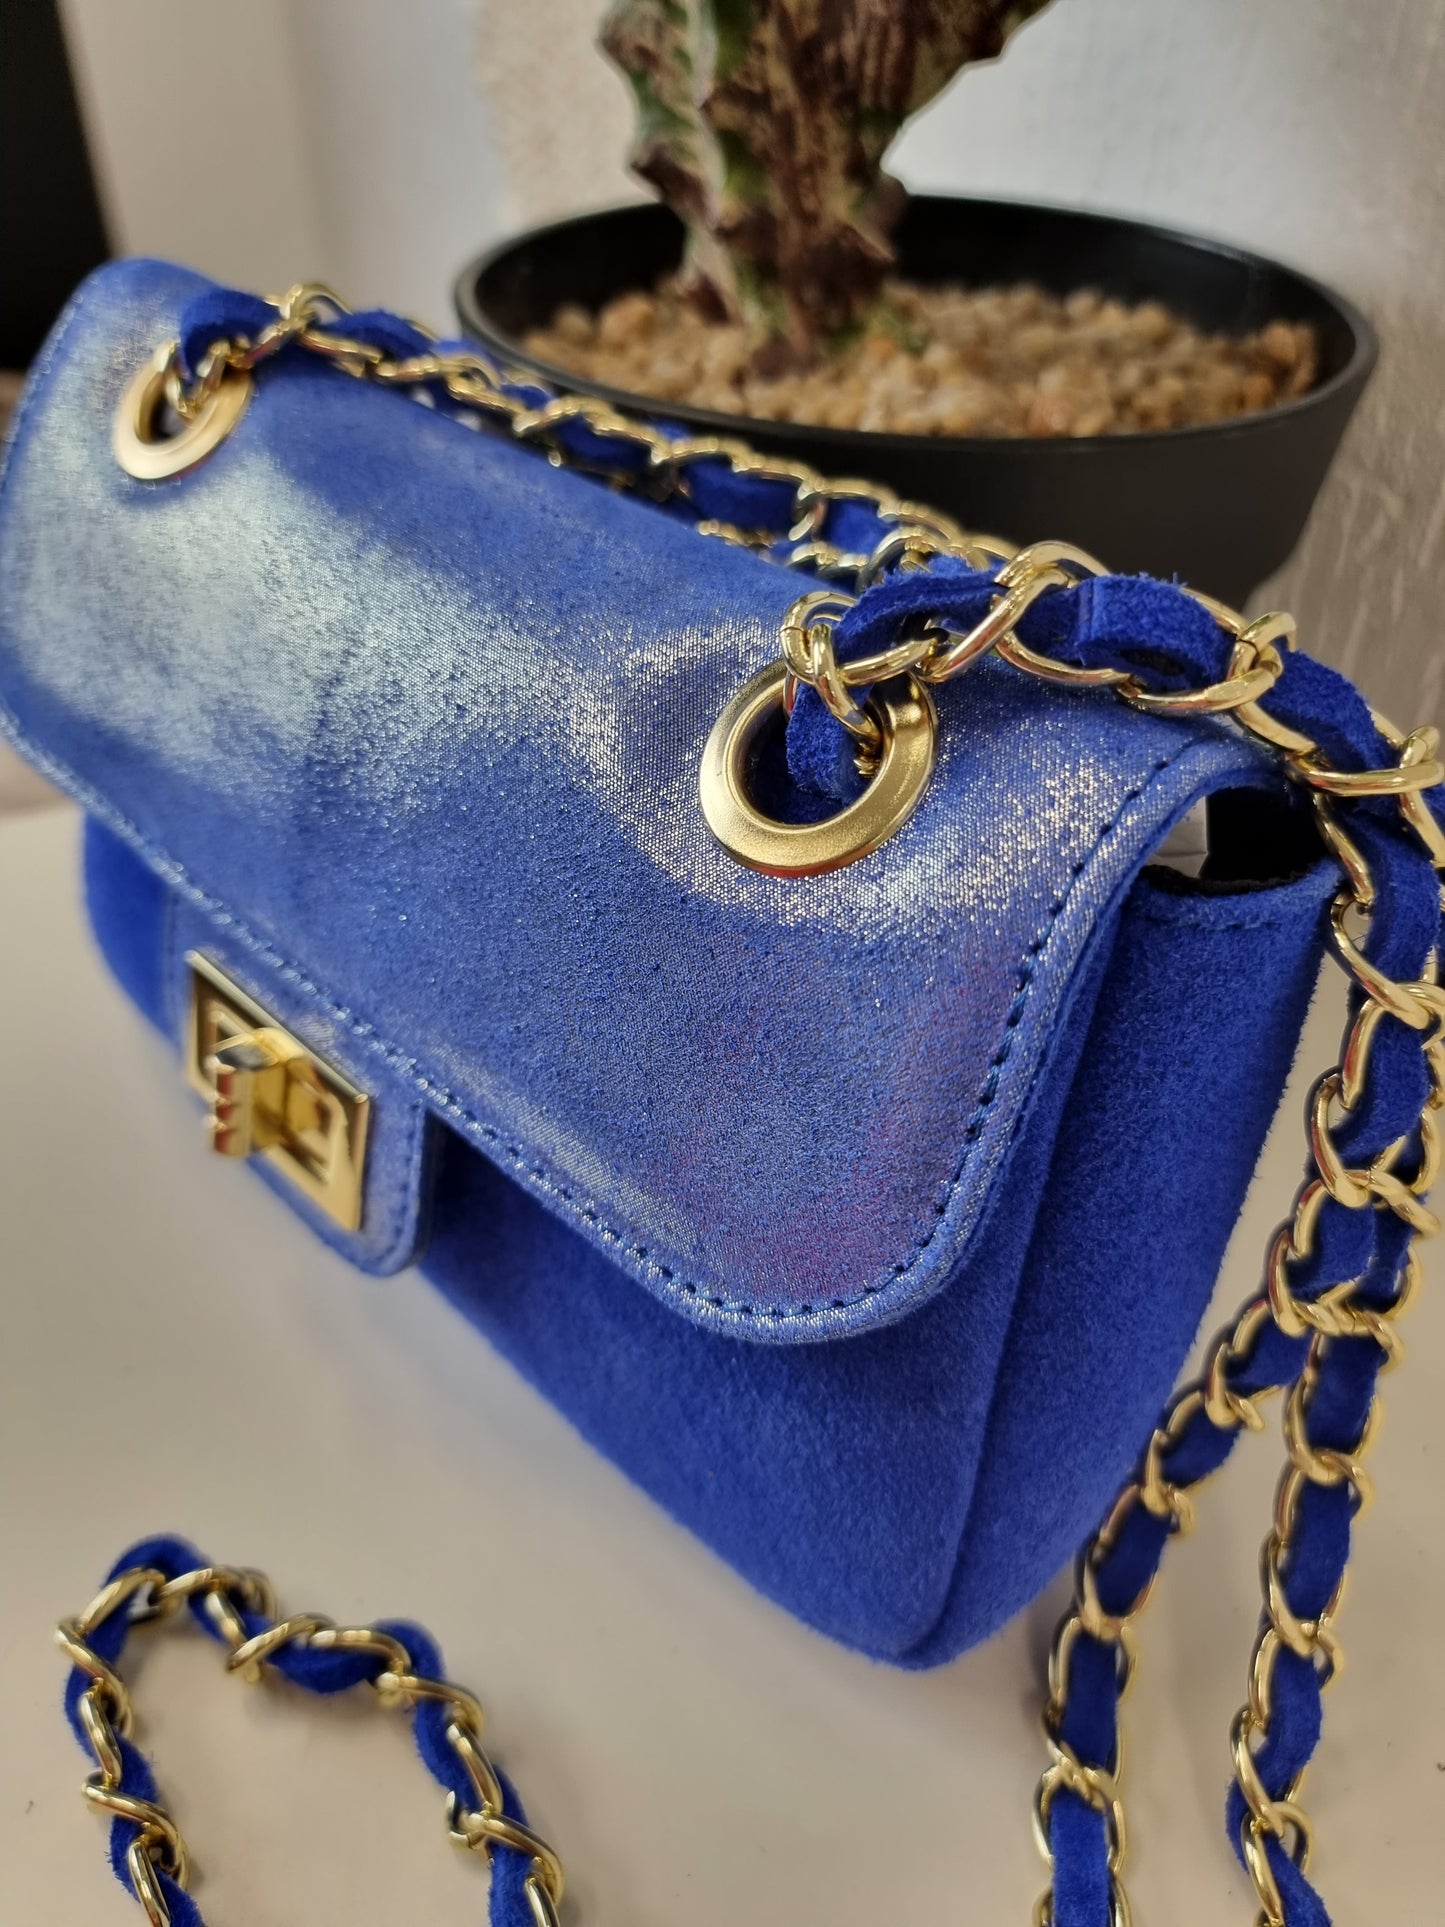 Handtasche Velourleder mit Goldketten und Glitzer in verschiedenen Farben